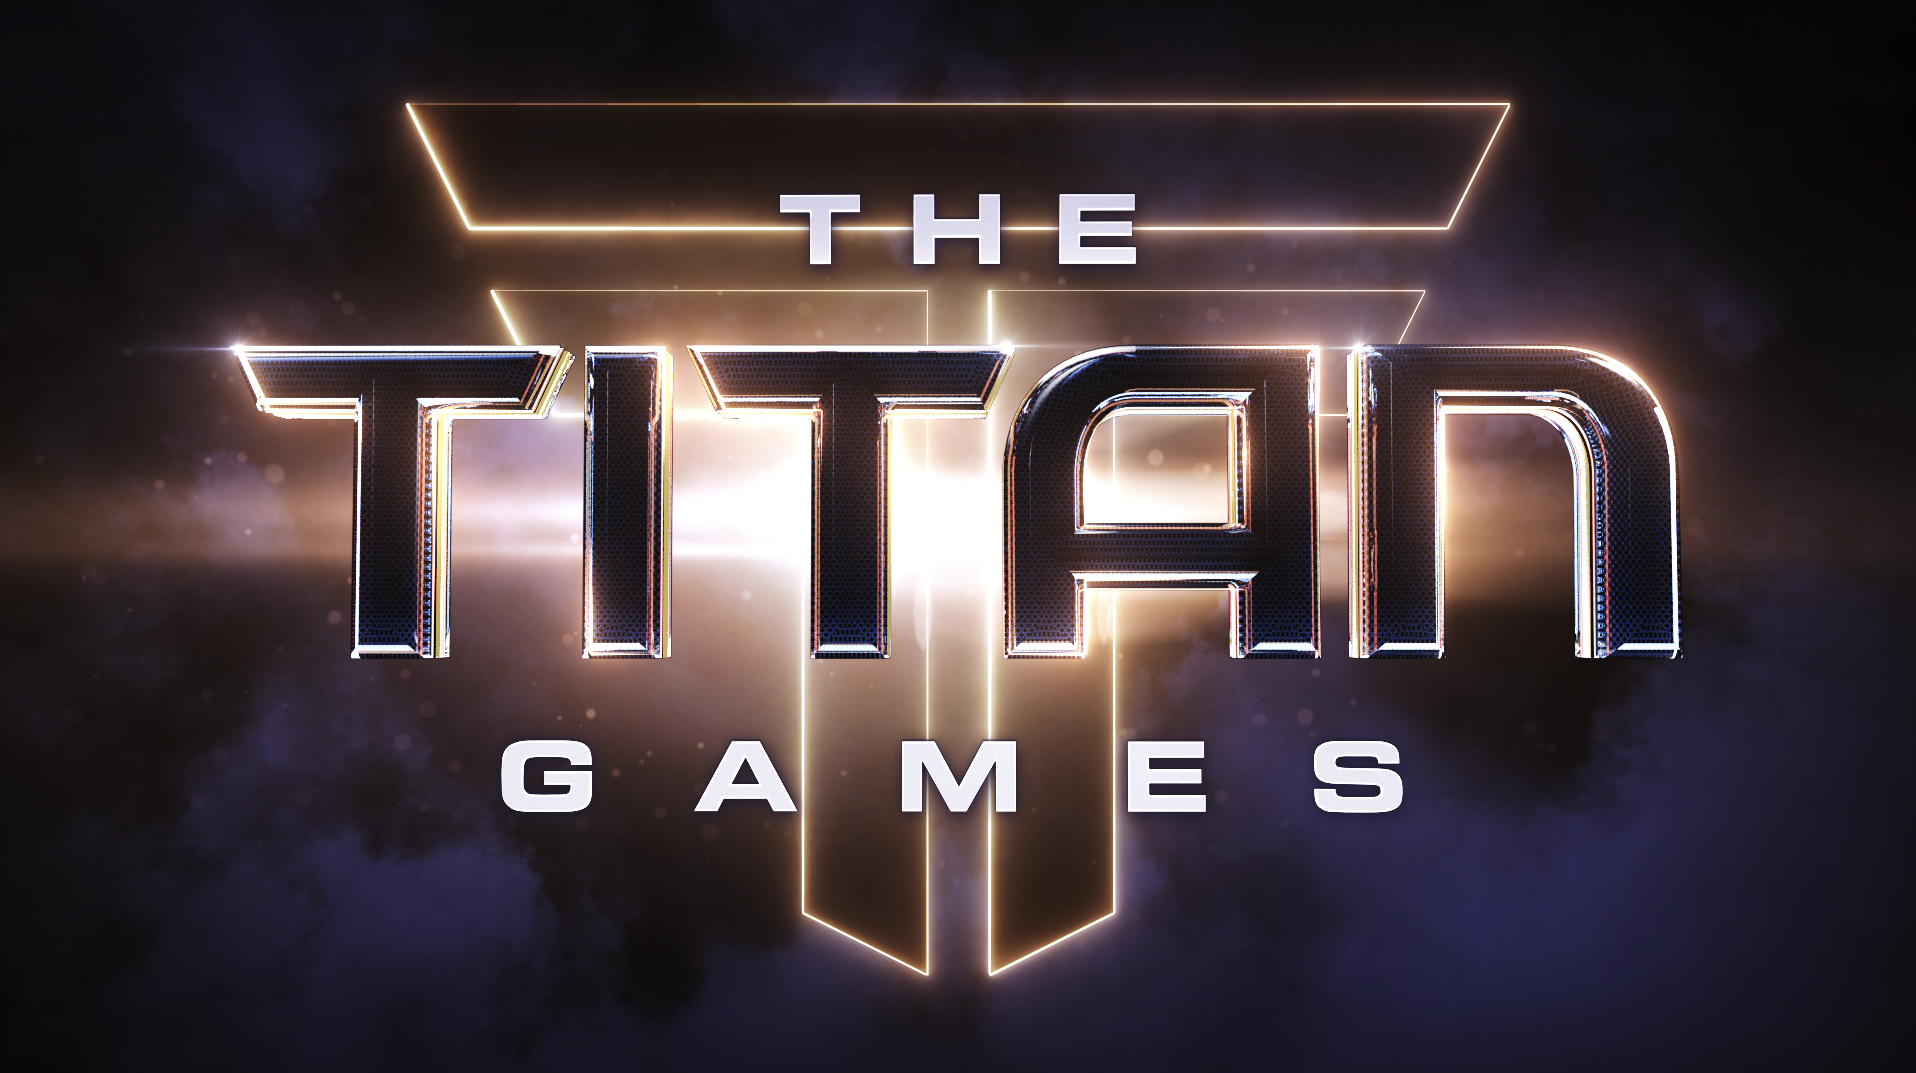 The Titan Games logo